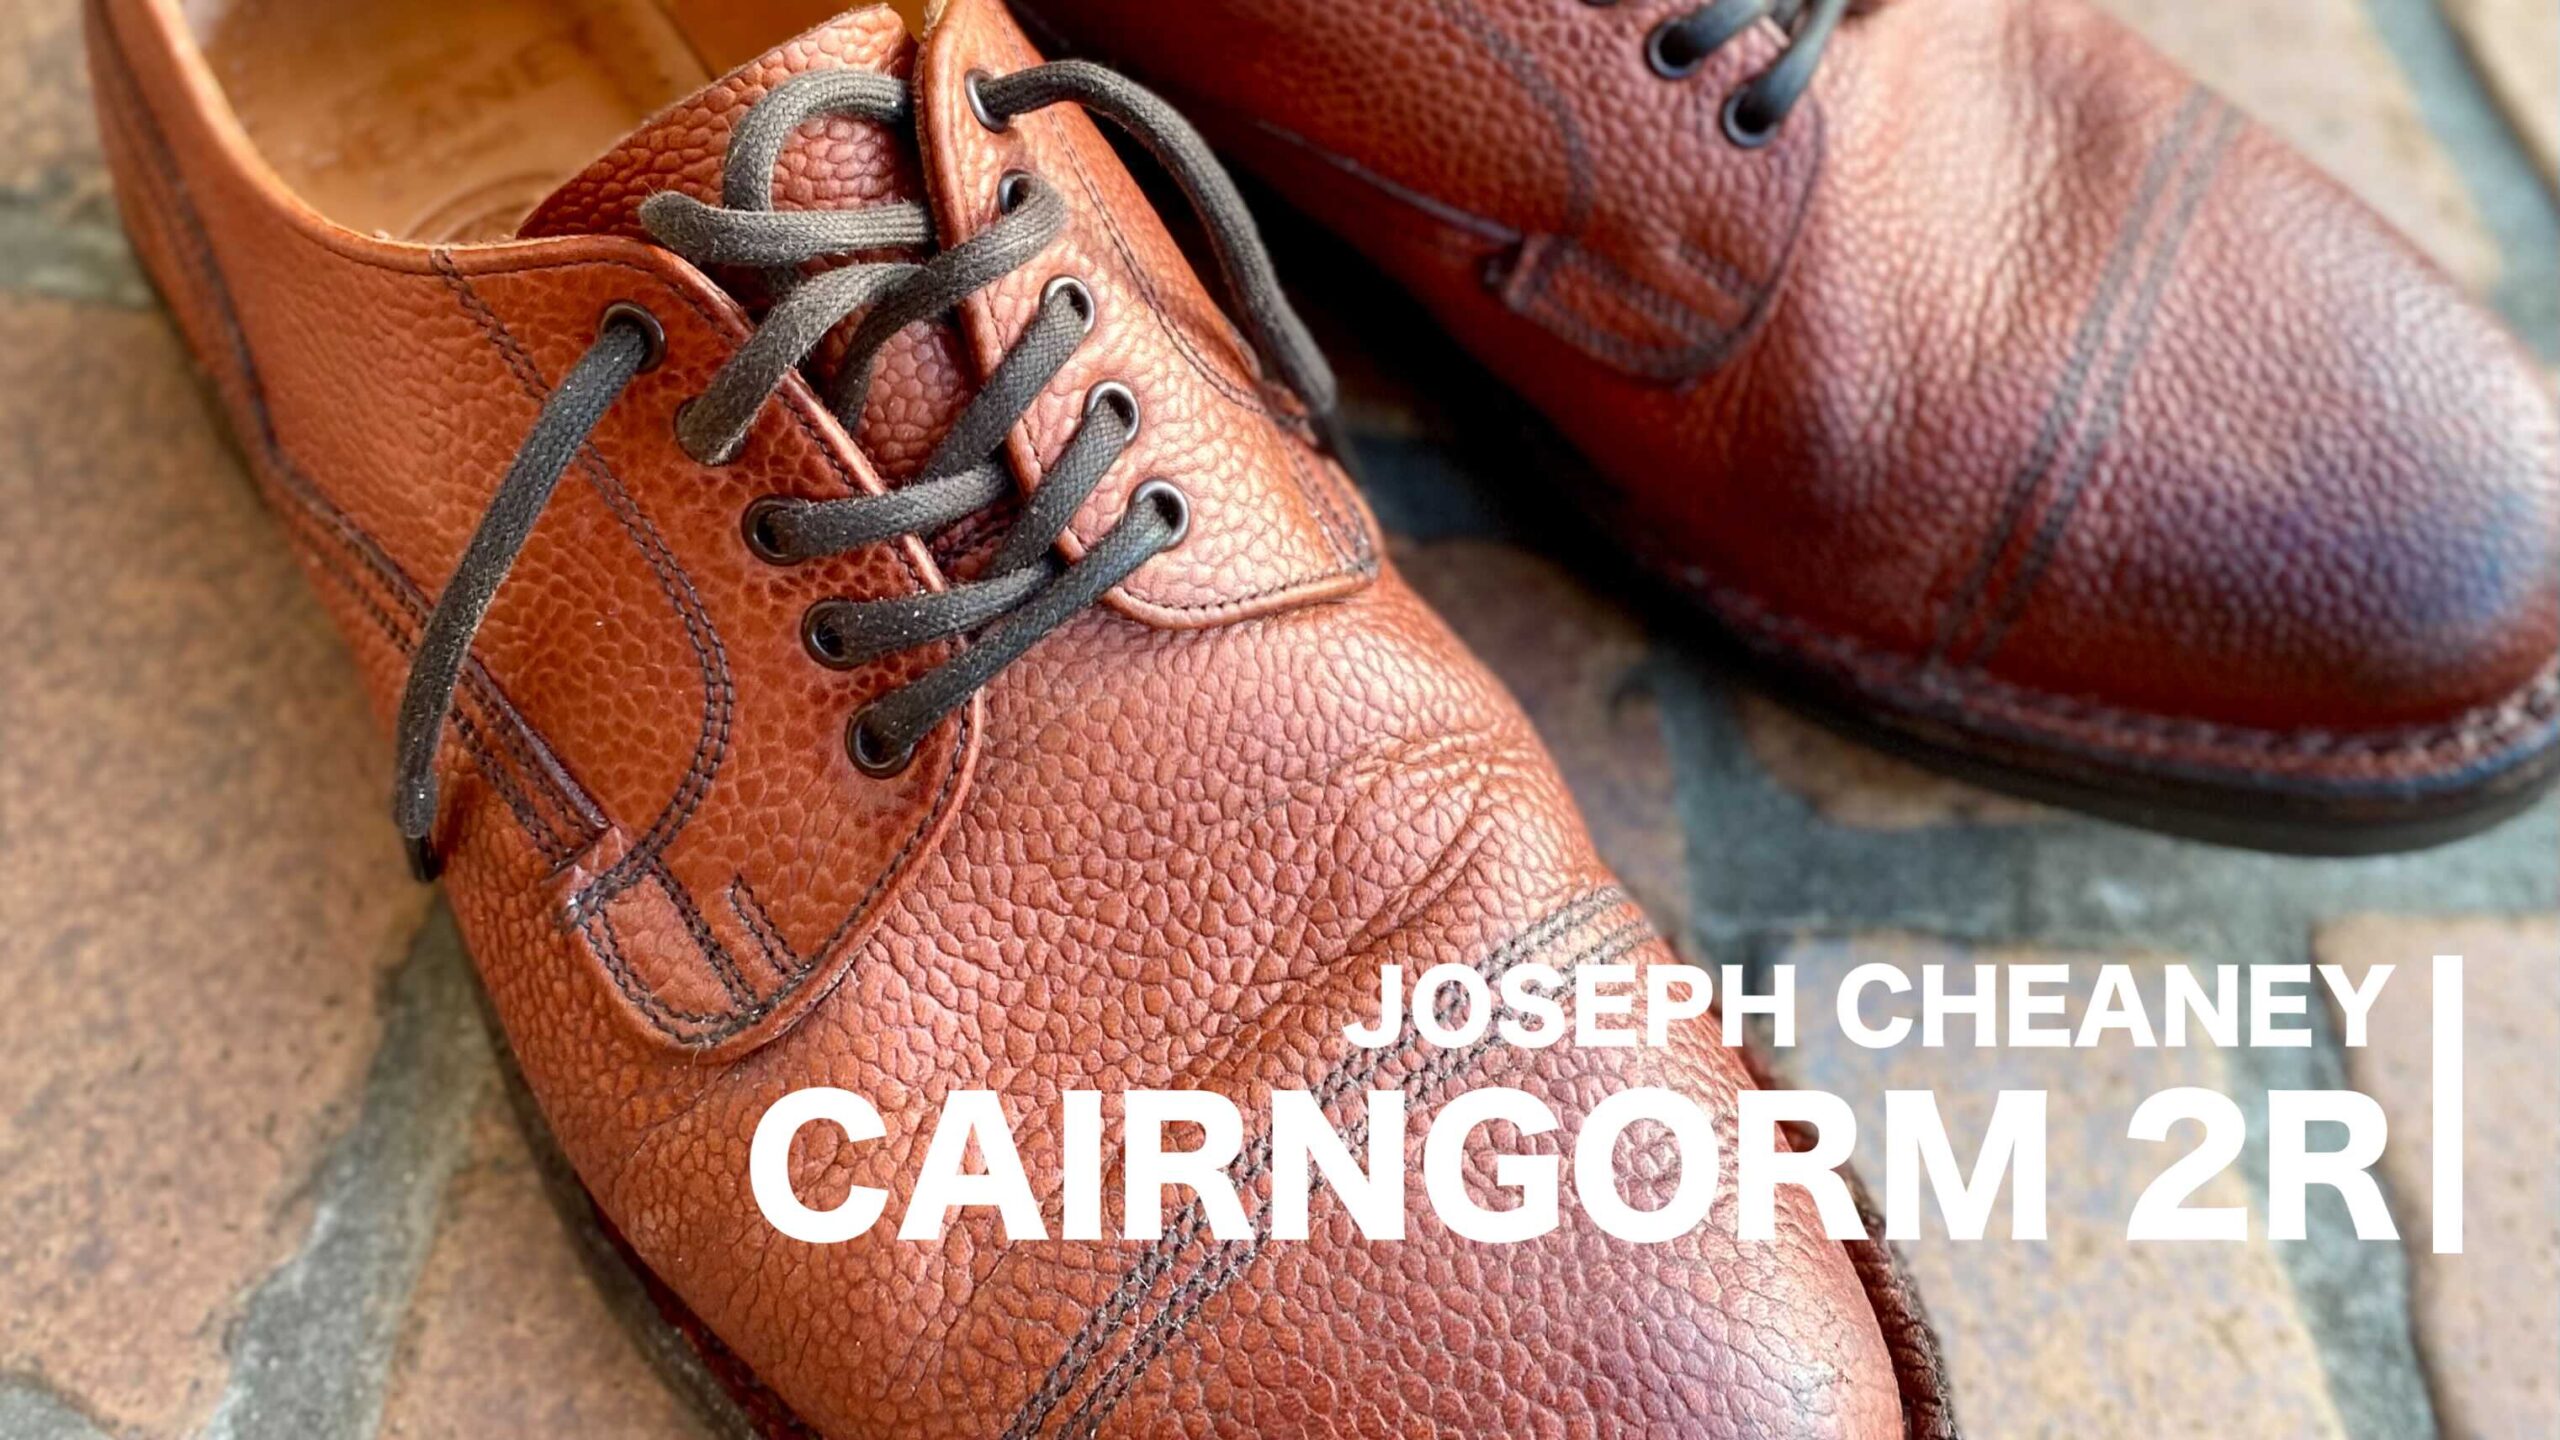 JOSEPH CHEANEY CAIRNGORM 2R / ケンゴン-eastgate.mk